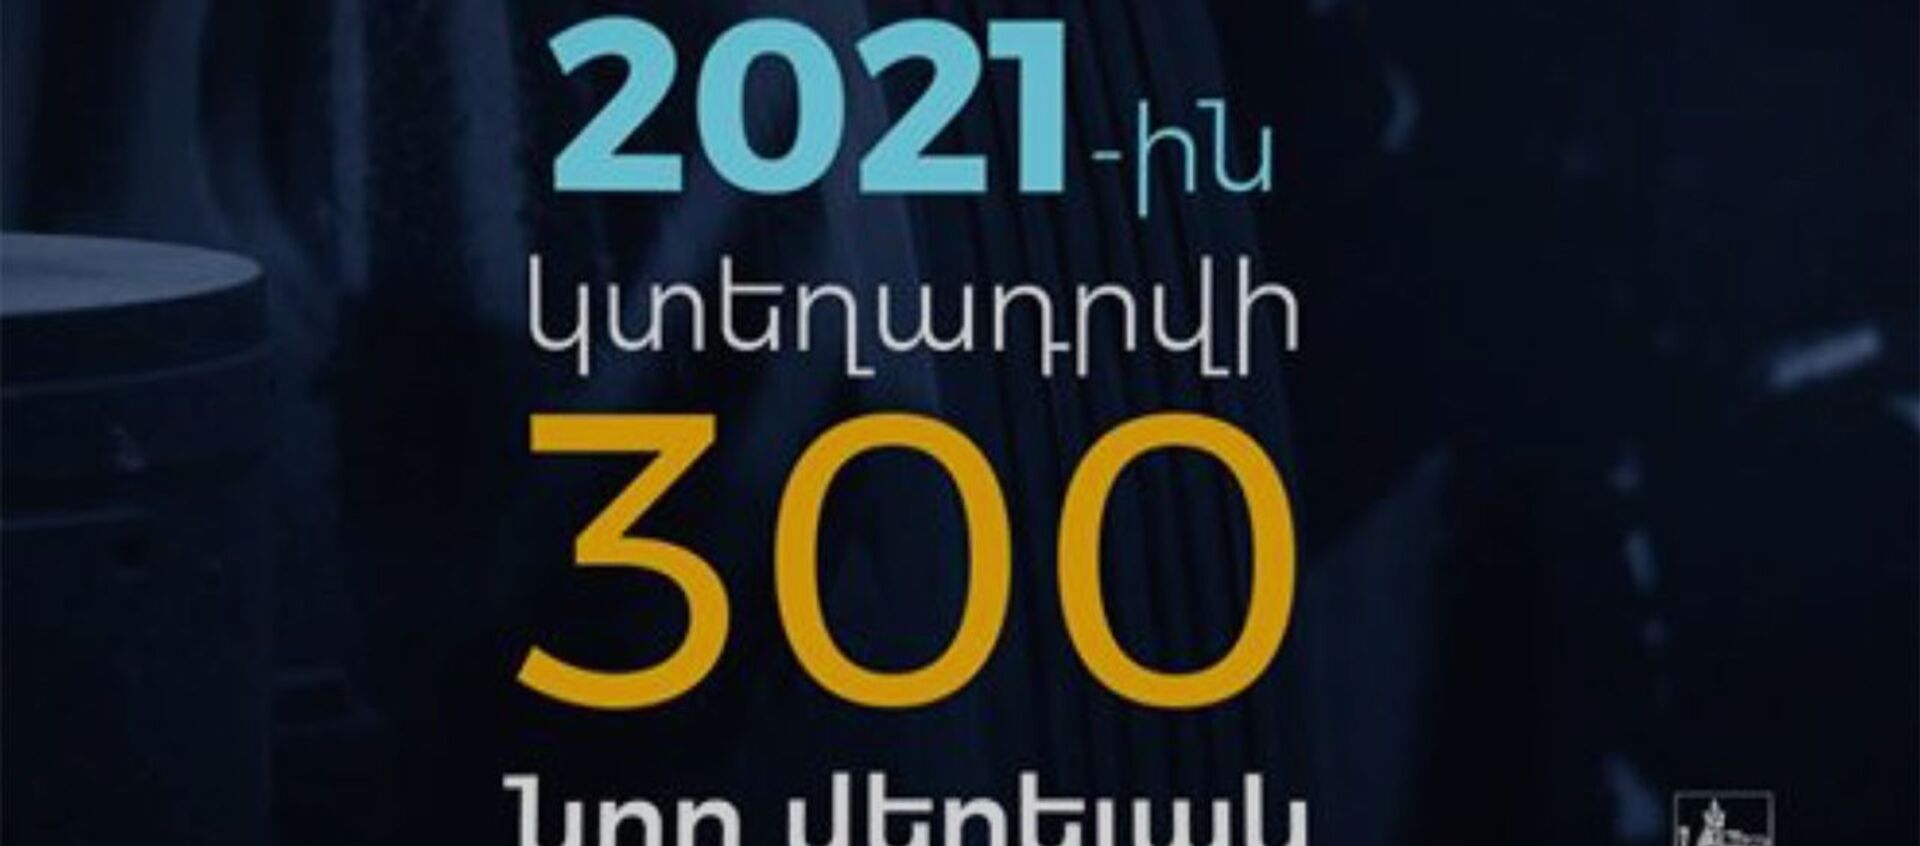 2021-ին 100-ի փոխարեն կտեղադրի 300 նոր վերելակ - Sputnik Արմենիա, 1920, 18.01.2021